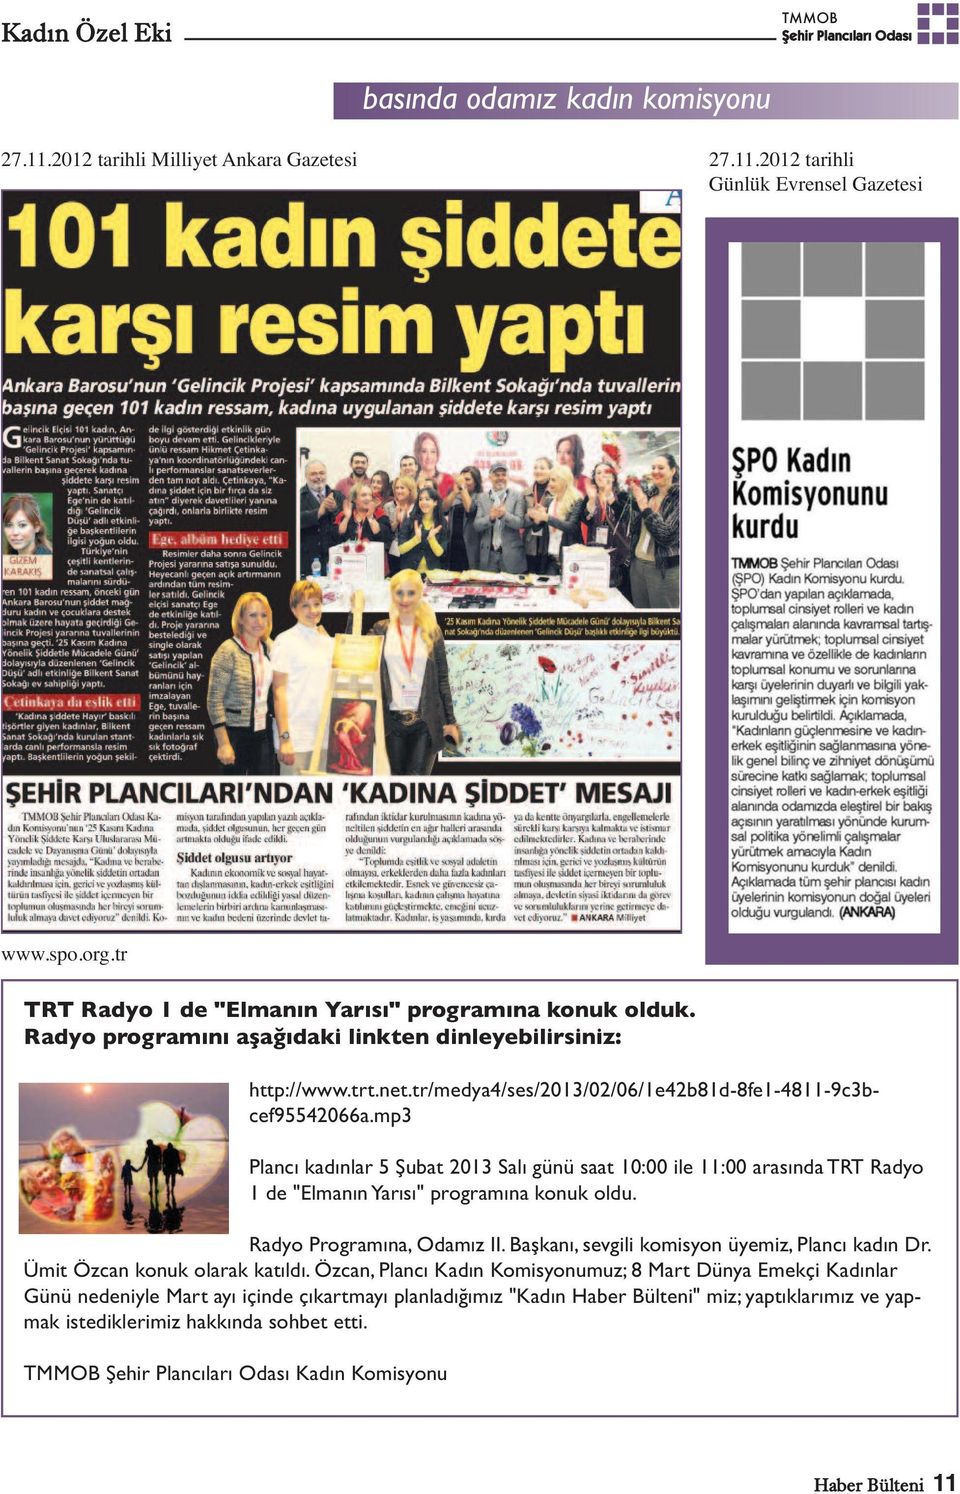 mp3 Plancı kadınlar 5 Şubat 2013 Salı günü saat 10:00 ile 11:00 arasında TRT Radyo 1 de "Elmanın Yarısı" programına konuk oldu. Radyo Programına, Odamız II.